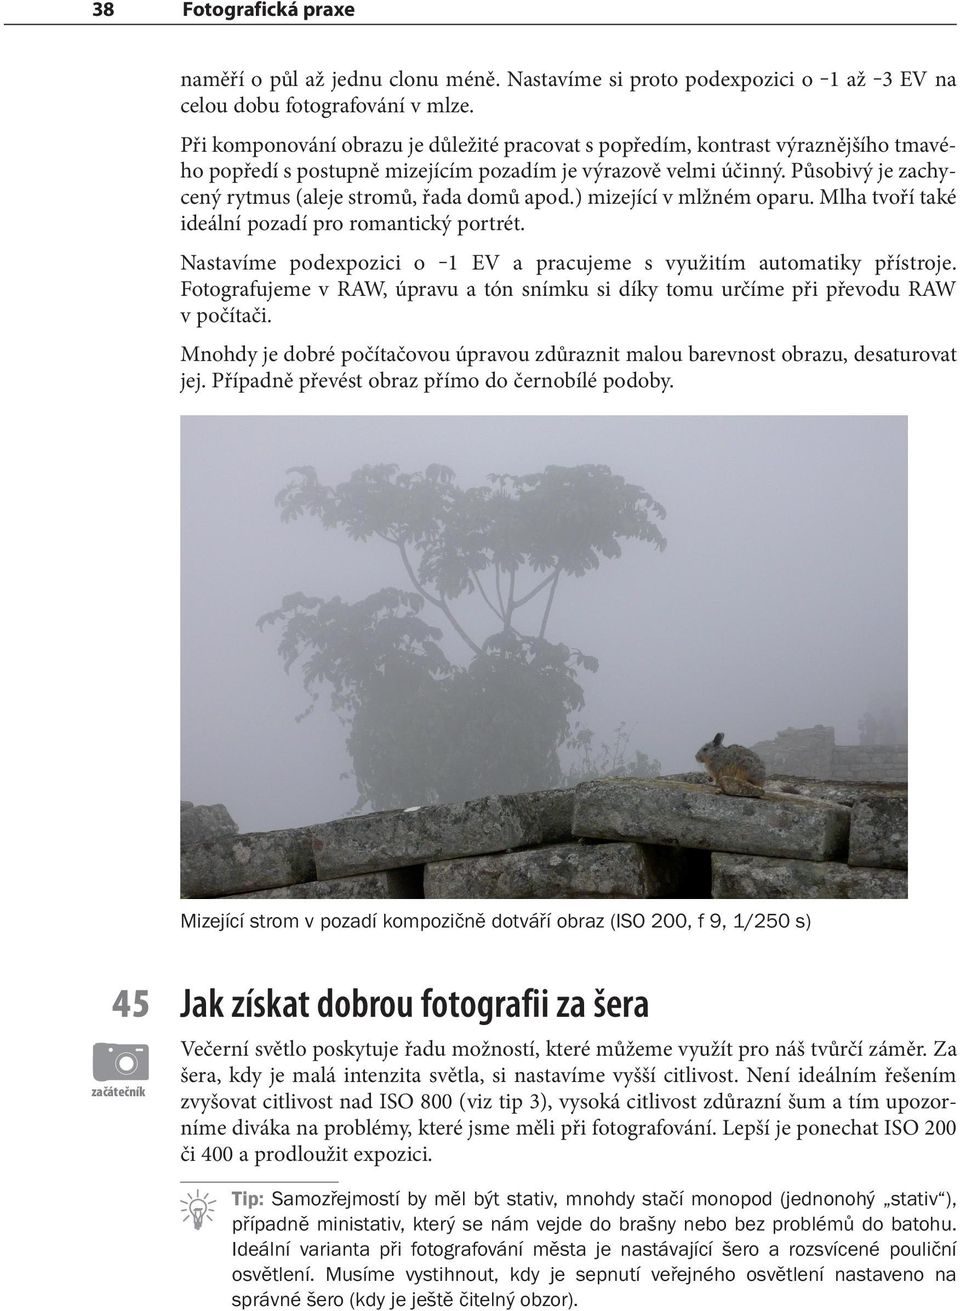 Působivý je zachycený rytmus (aleje stromů, řada domů apod.) mizející v mlžném oparu. Mlha tvoří také ideální pozadí pro romantický portrét.